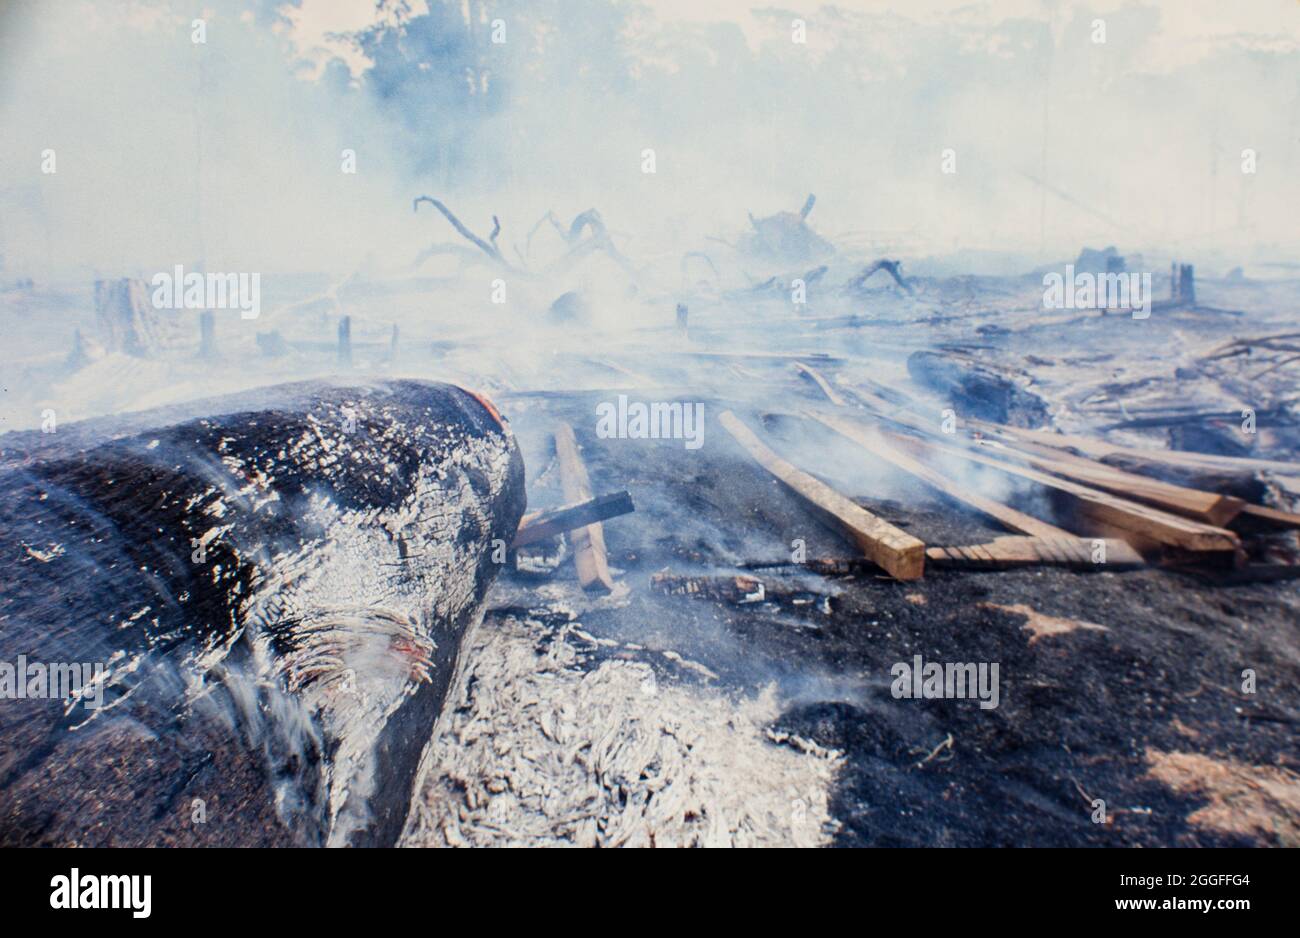 La quema de la selva amazónica, la deforestación para el ganado. Foto de stock